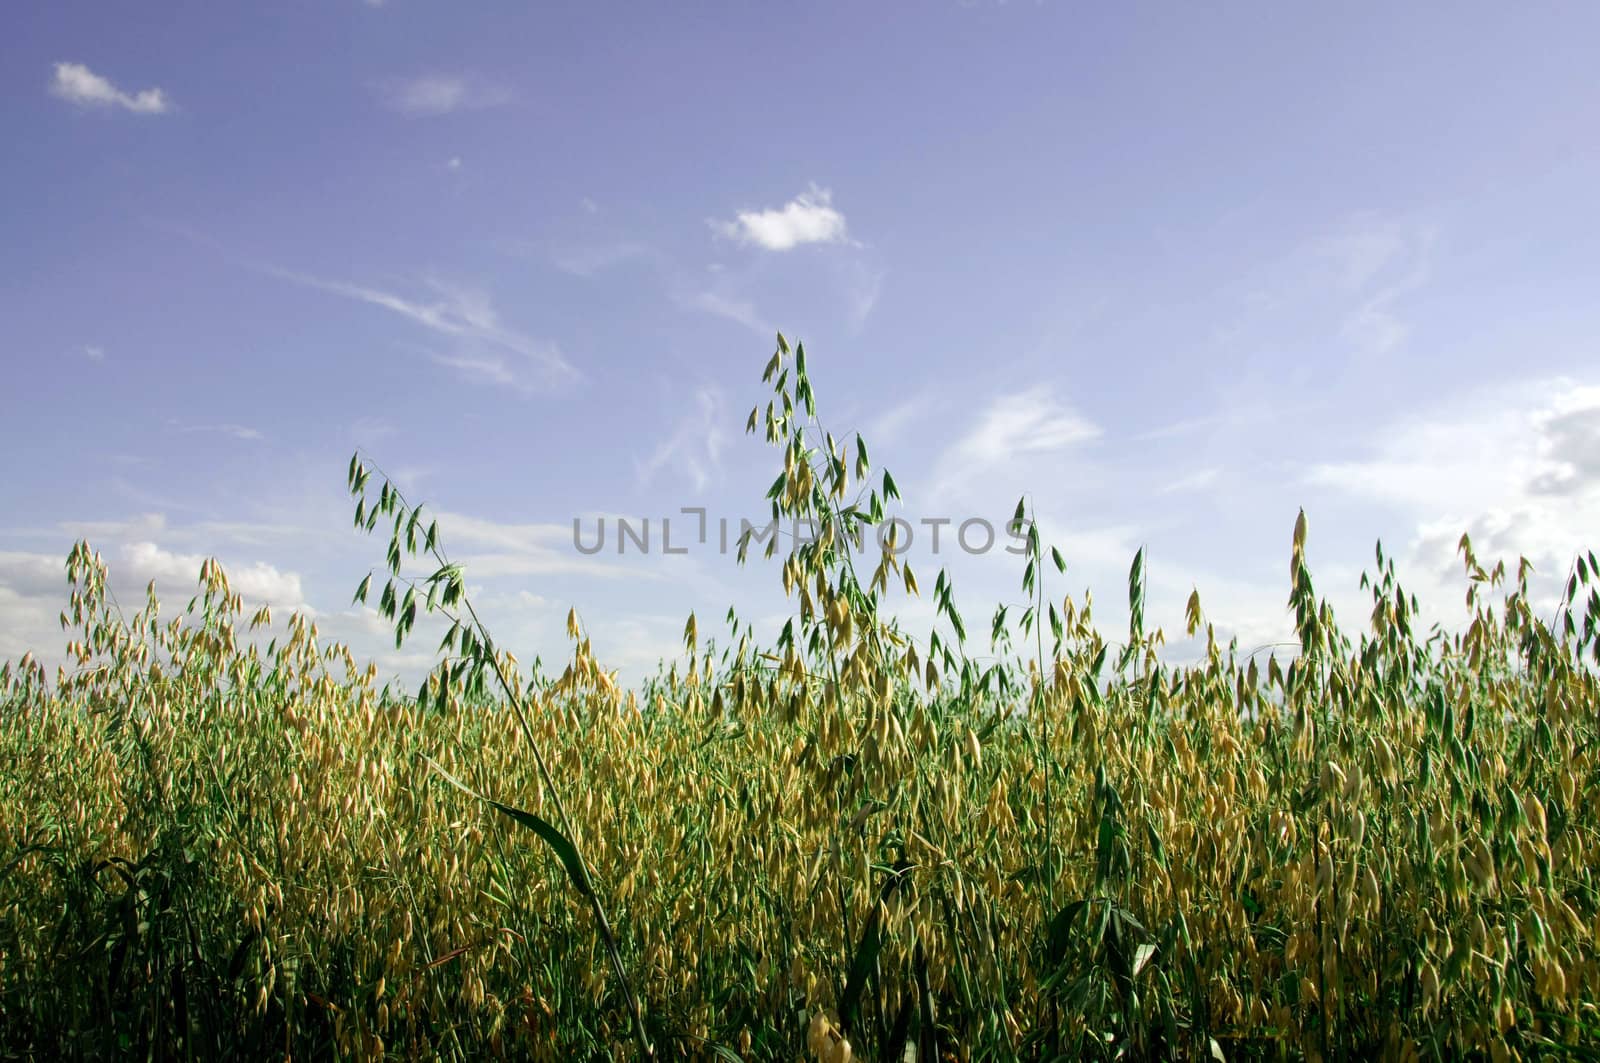 The field of oat. by murysia